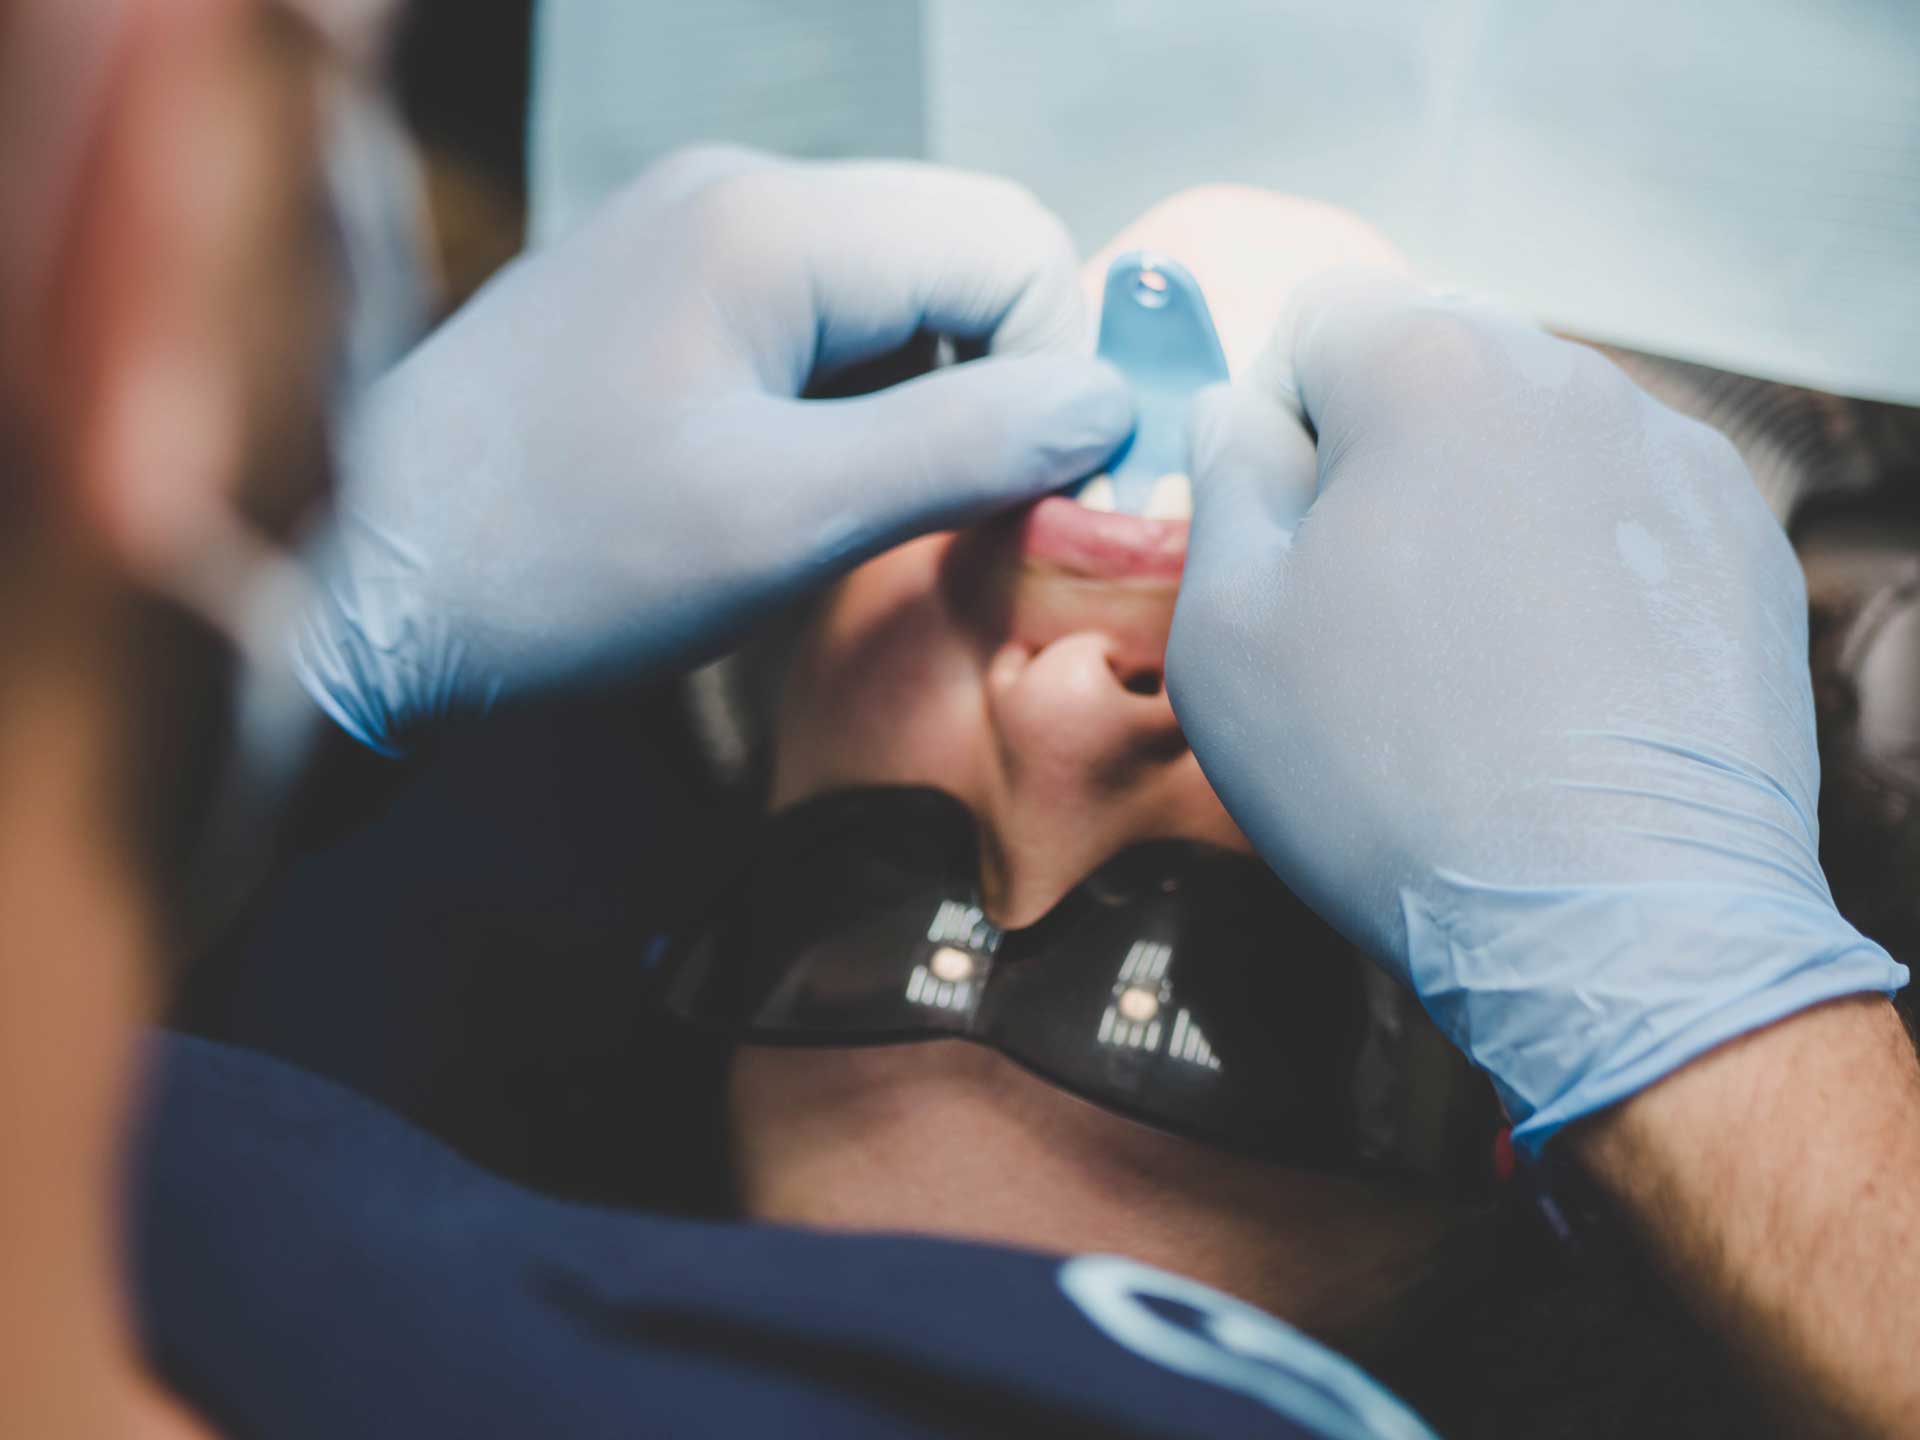 Dental veneers concealing multiple dental issues